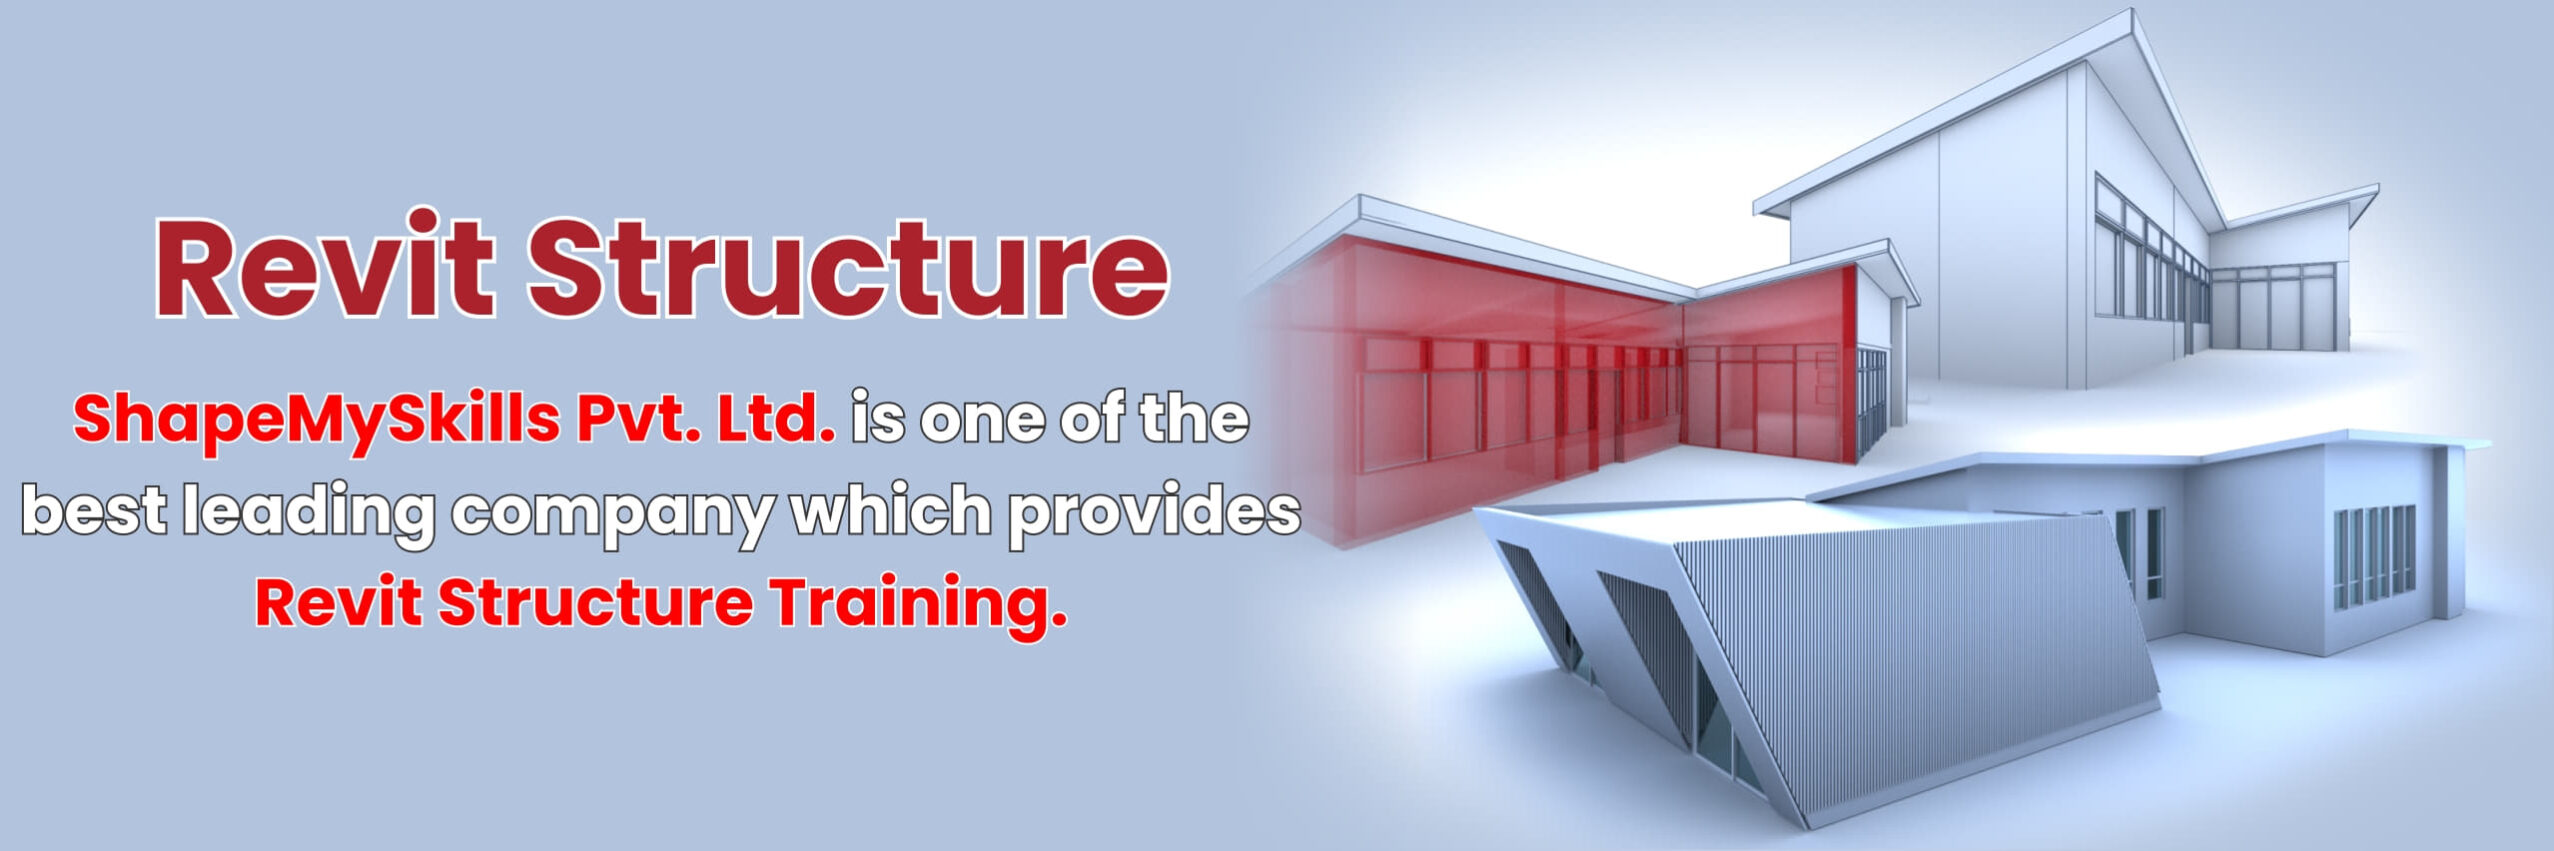 Revit Structure Training In Noida | Revit Structure Training In Delhi | Revit Structure Online Training